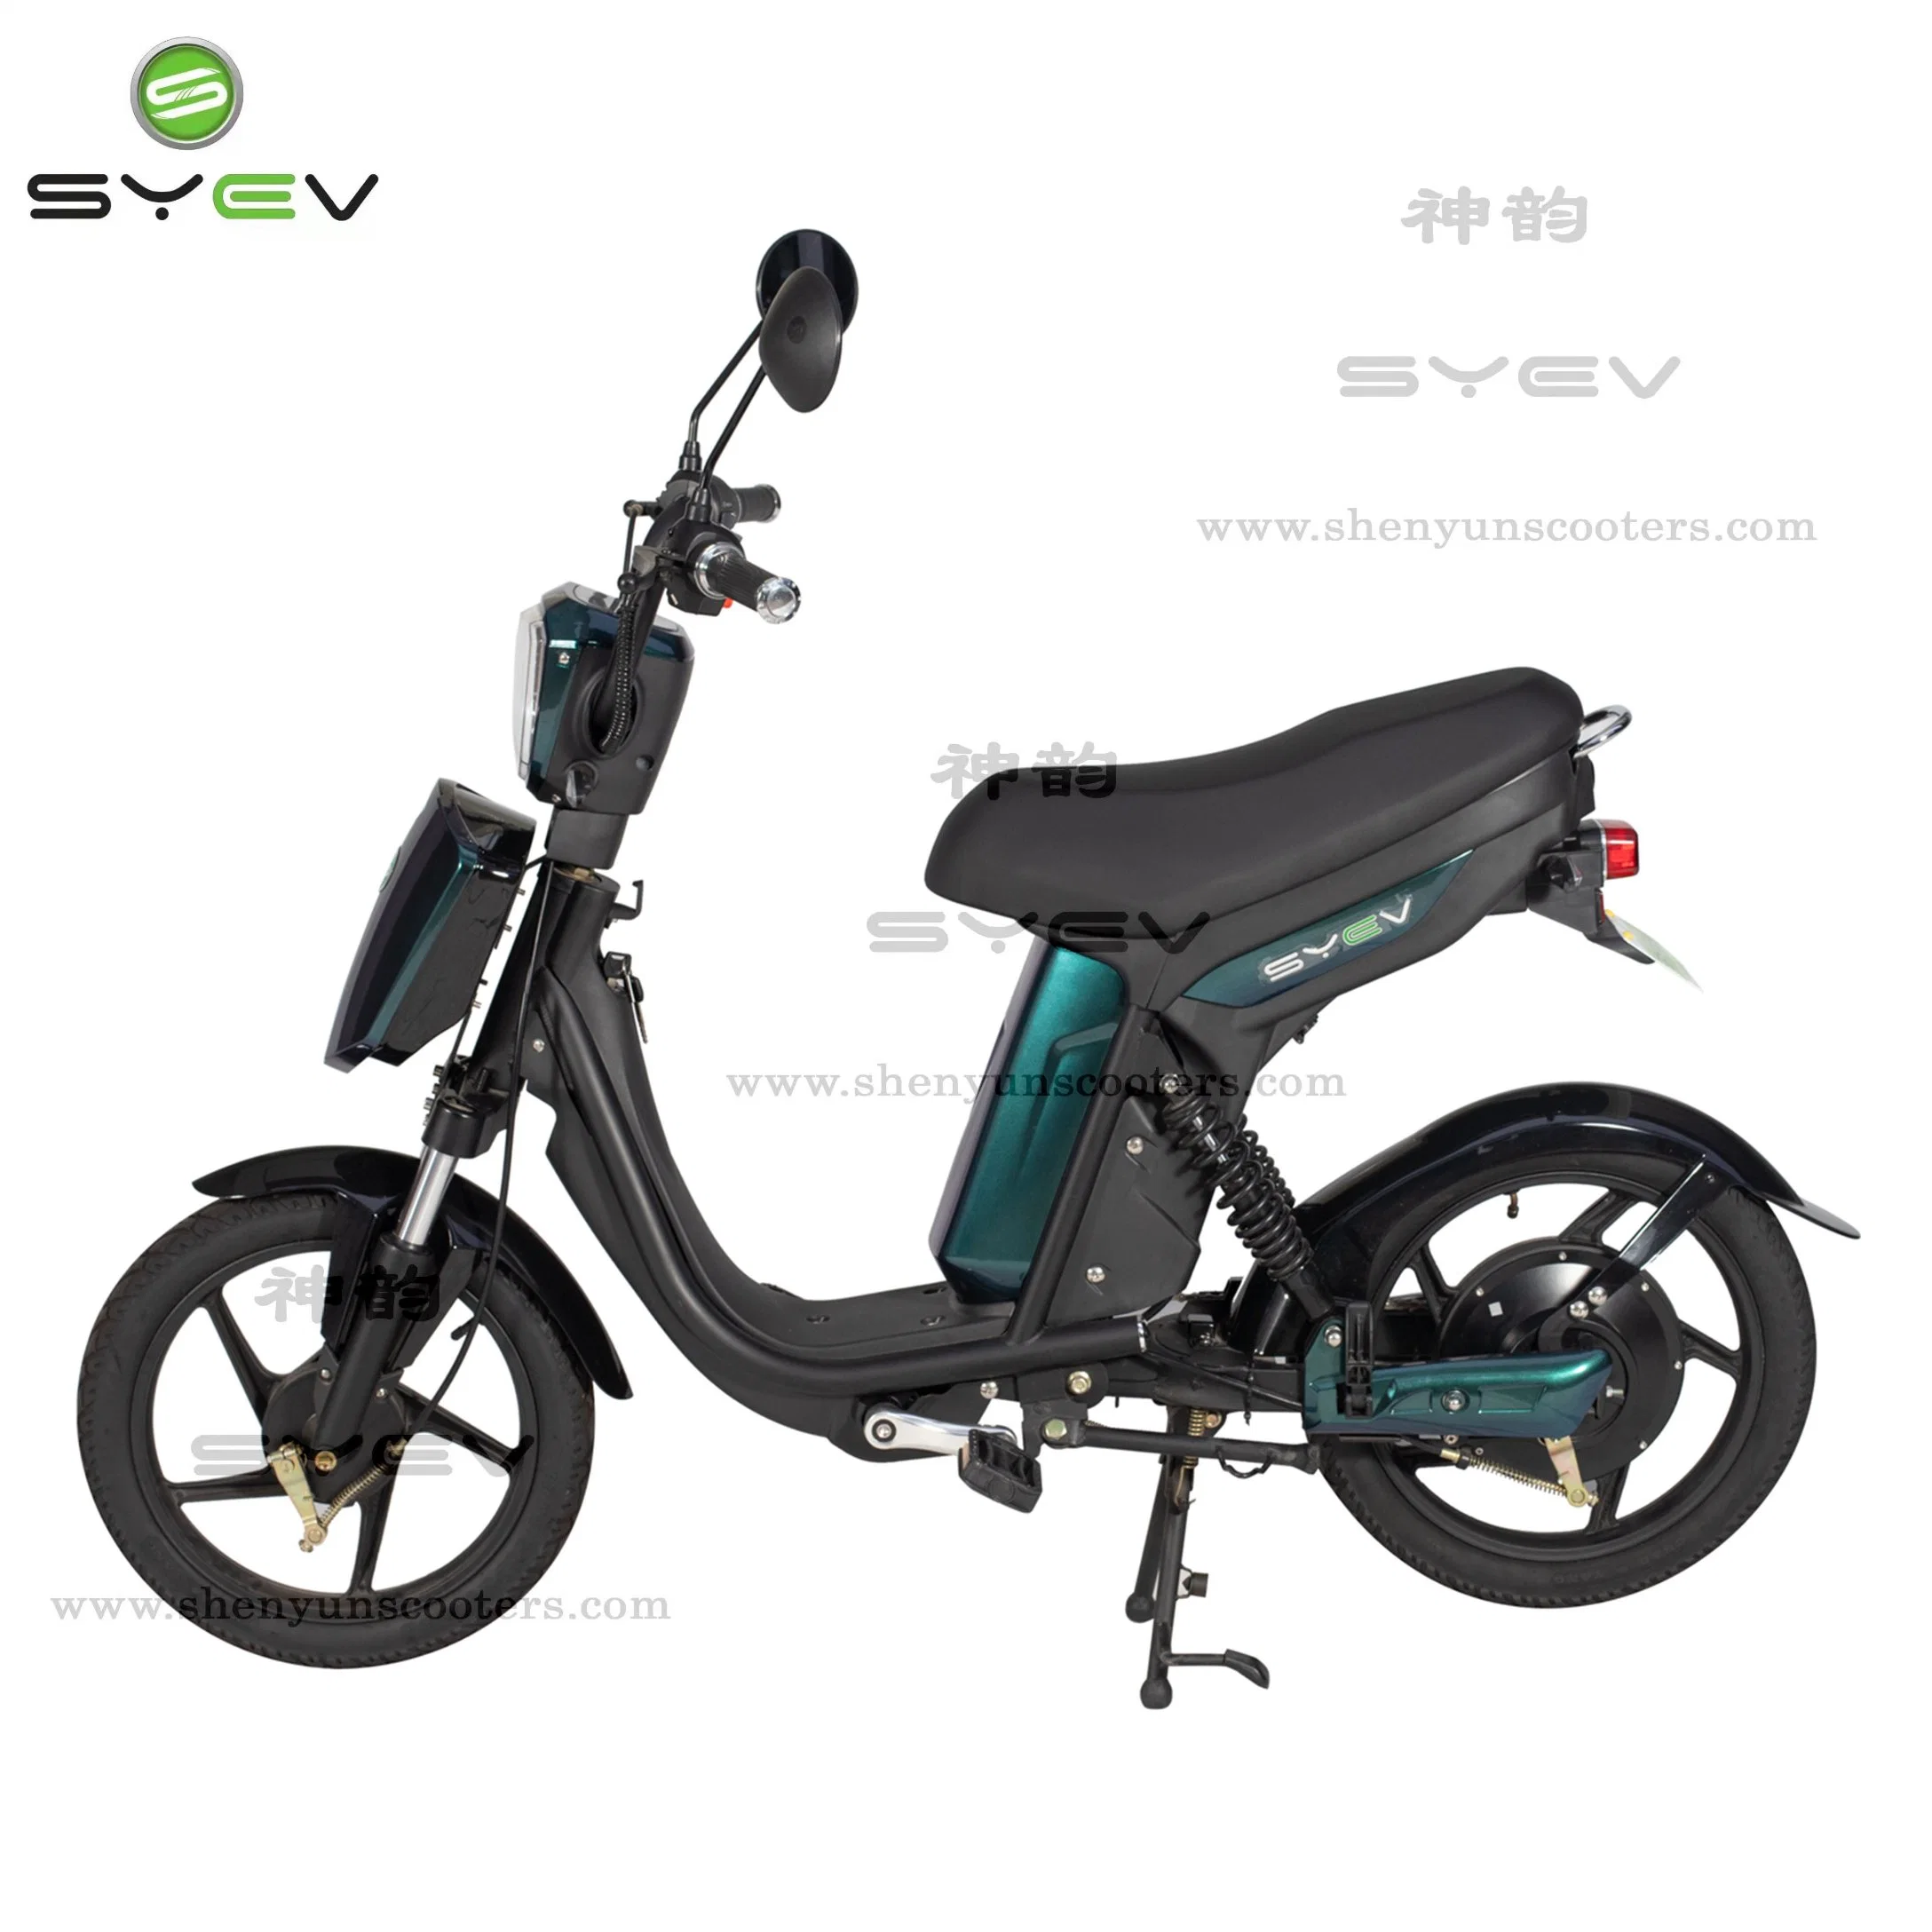 Стандарт ЕС сертификат CE Syev заводской оптовой Sy-Lxqs основных дешевые цены во всем мире стильный 2 мотоцикл на два колеса электрический велосипед с 25~32км/ч безопасной скоростью